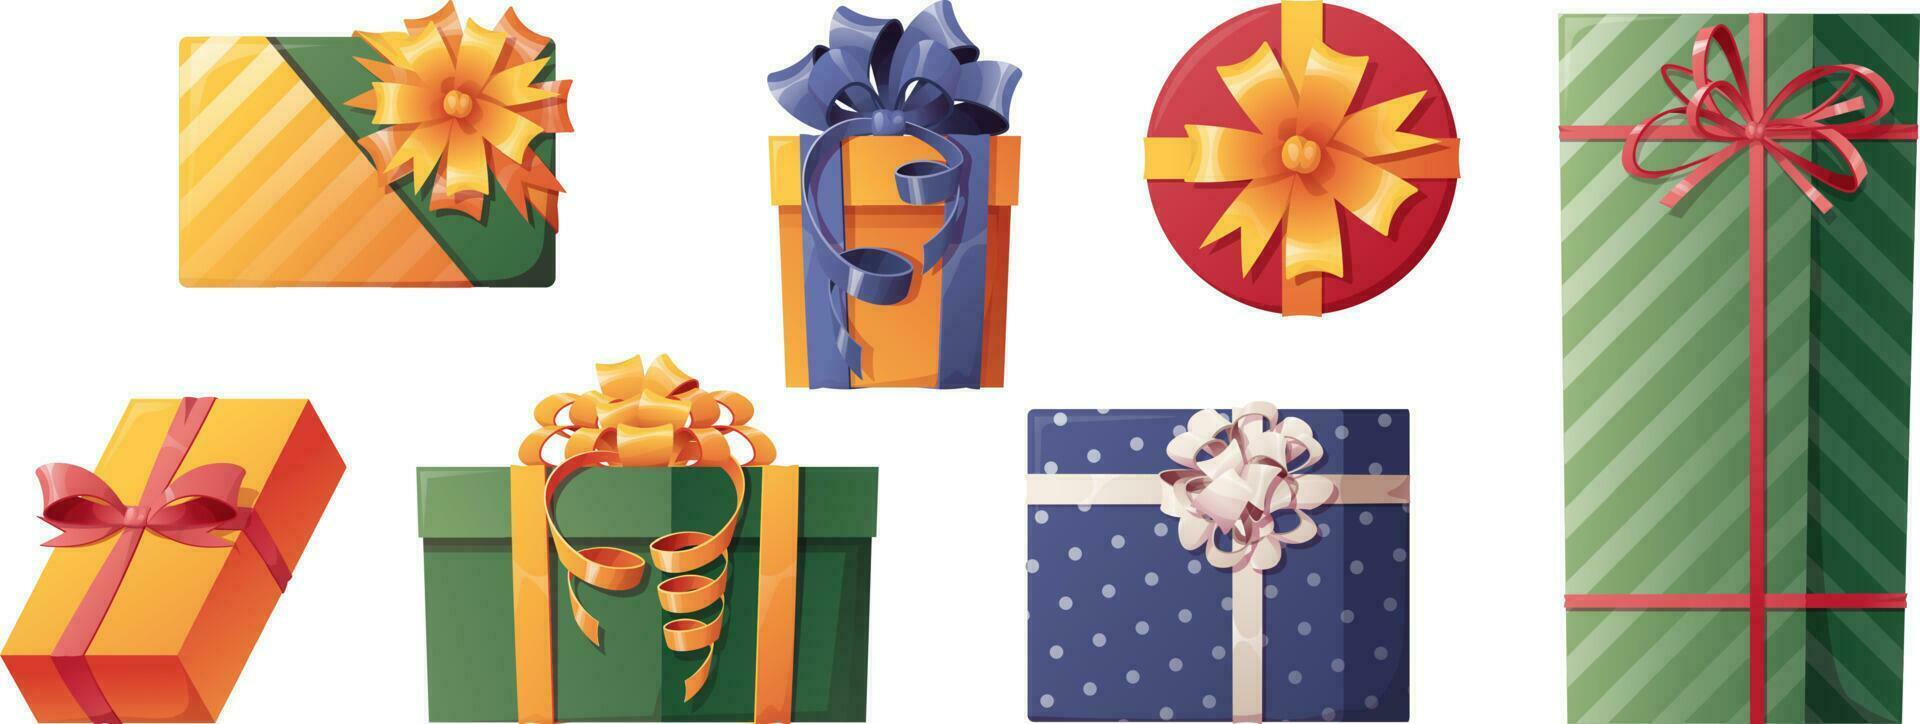 conjunto de regalos coloridos decorados con lazos de raso. decoración navideña iconos, pegatinas, ilustraciones de cajas navideñas vector